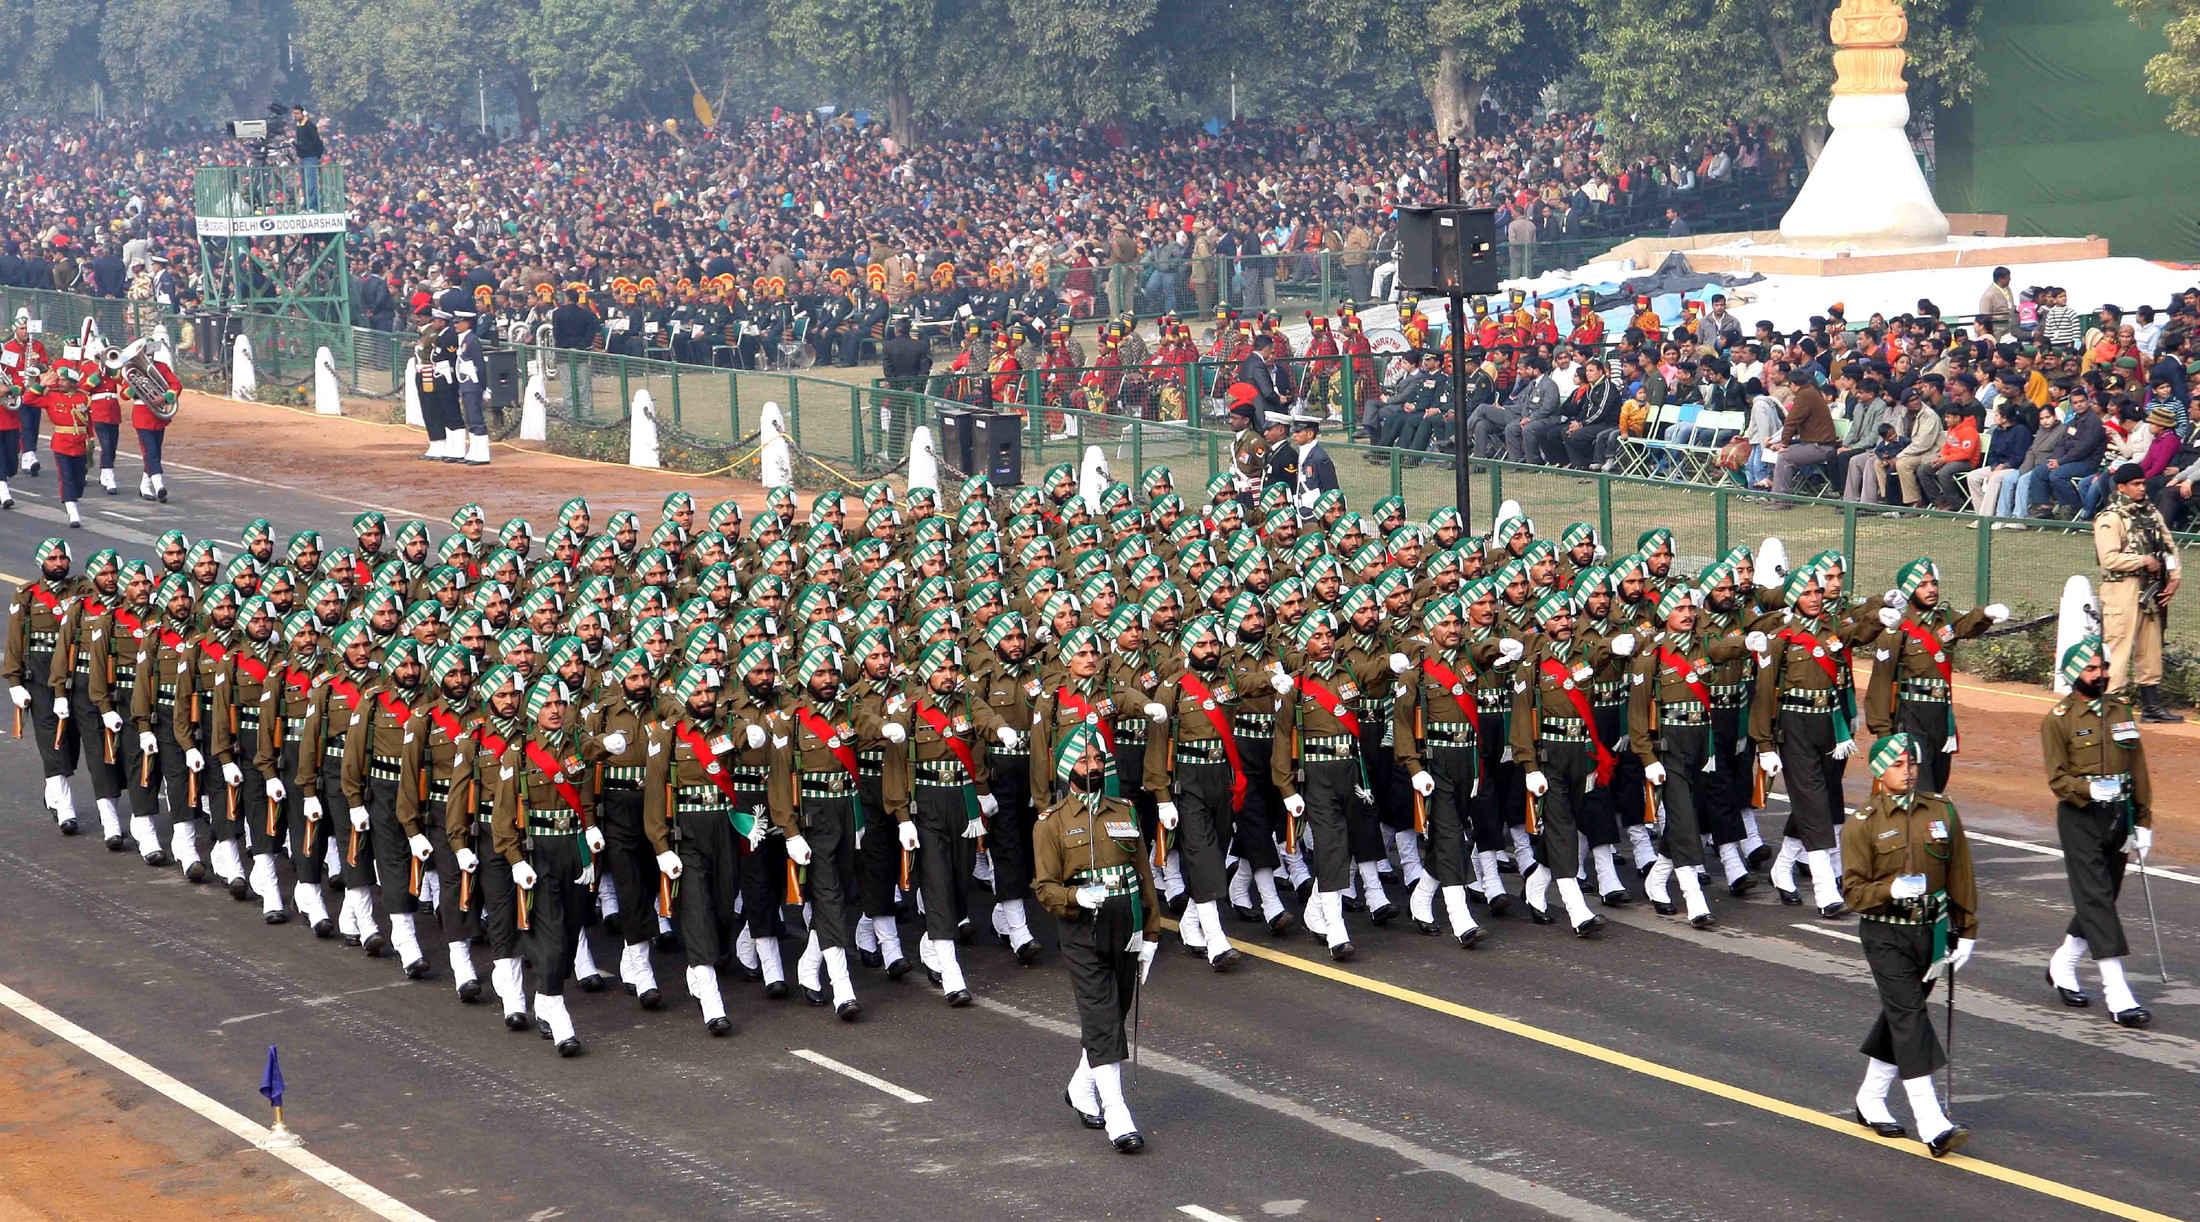 Quân đội Ấn Độ